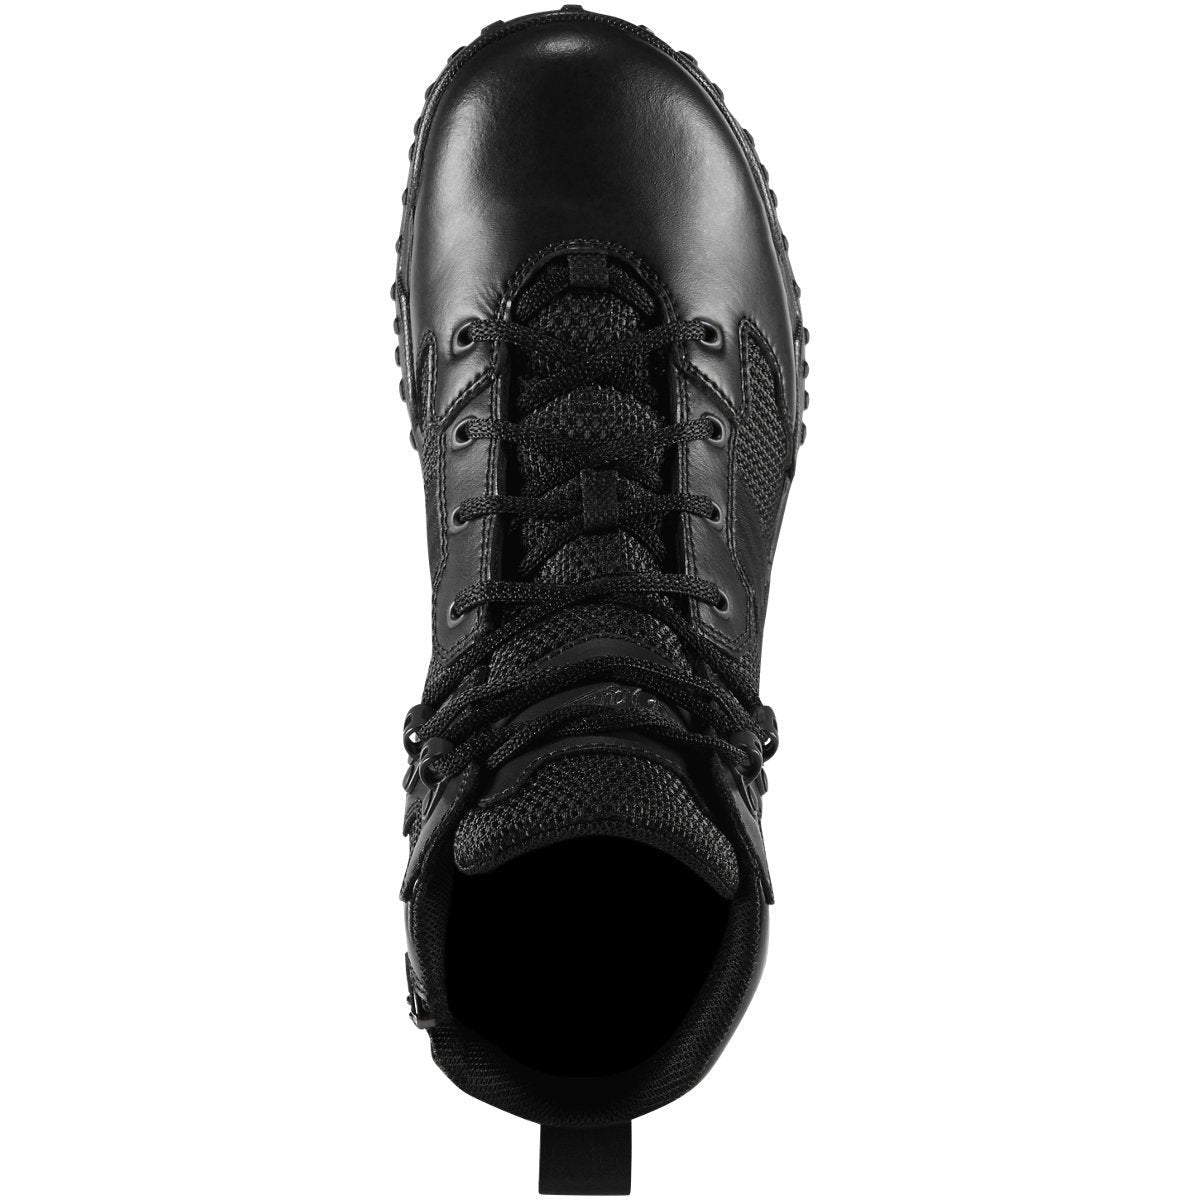 Danner Men's Scorch 6" Waterproof Side Zip Duty Boot -Black- 25731  - Overlook Boots